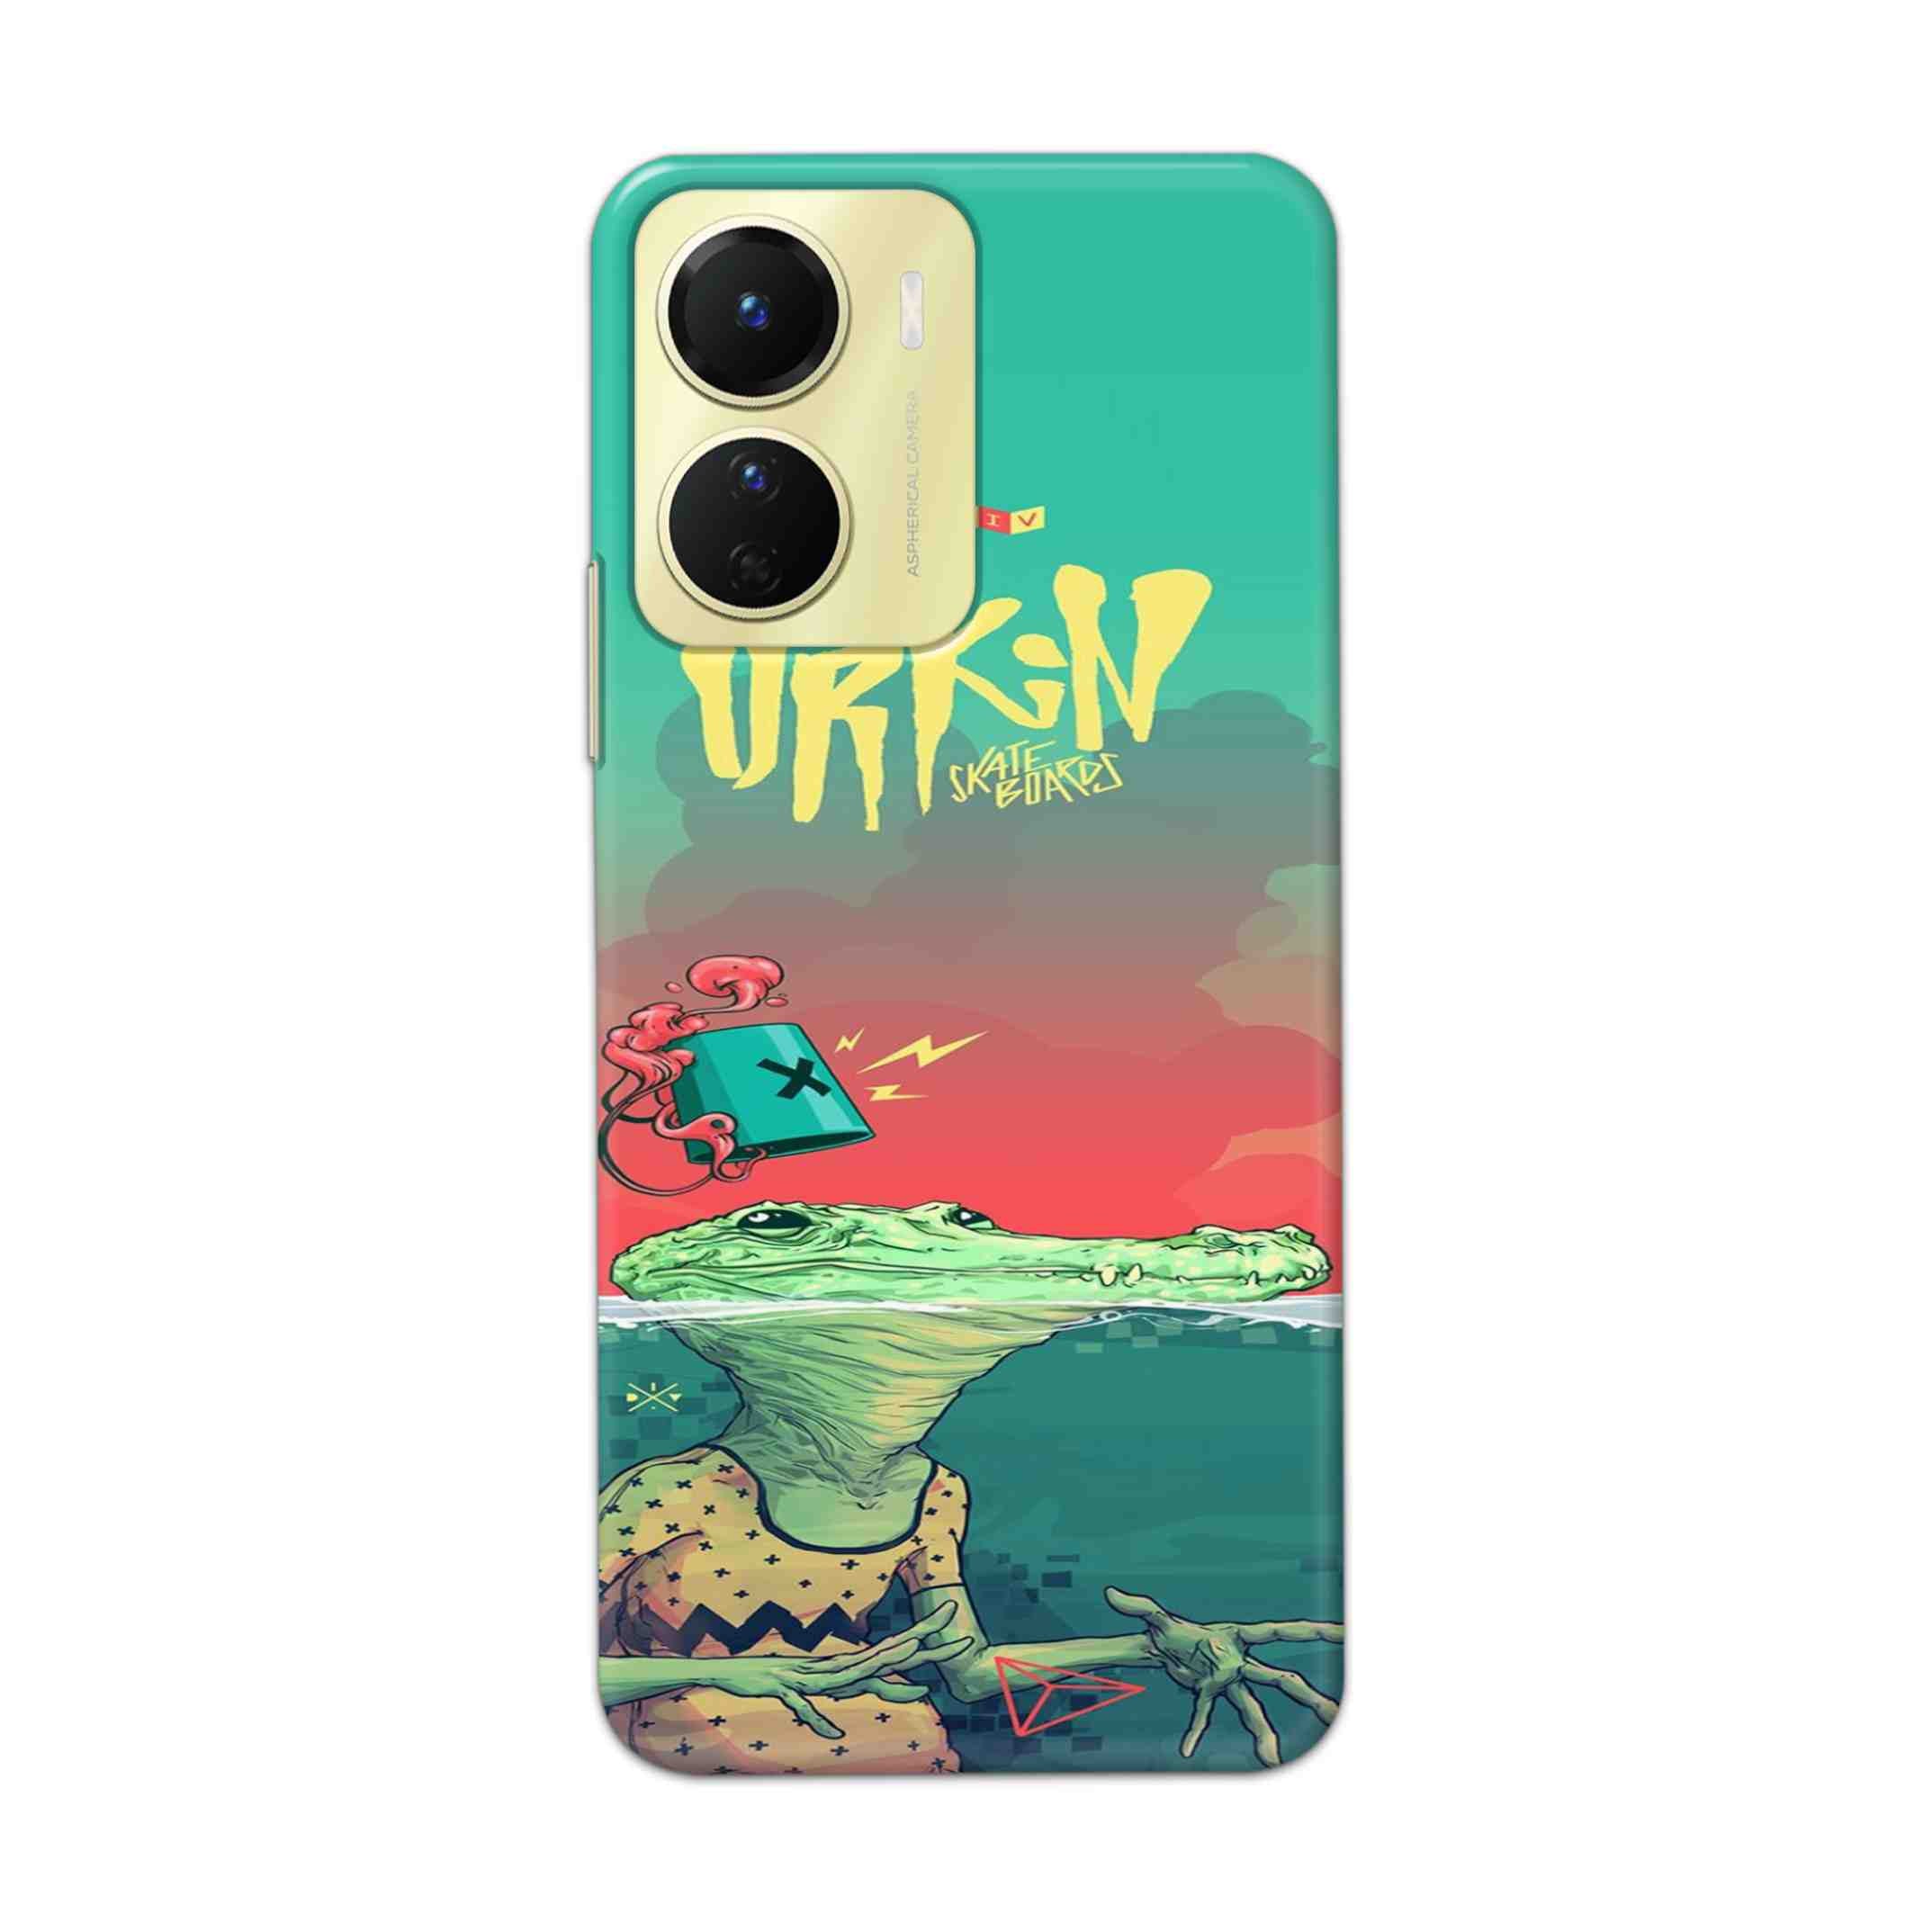 Buy Urkin Hard Back Mobile Phone Case Cover For Vivo Y16 Online